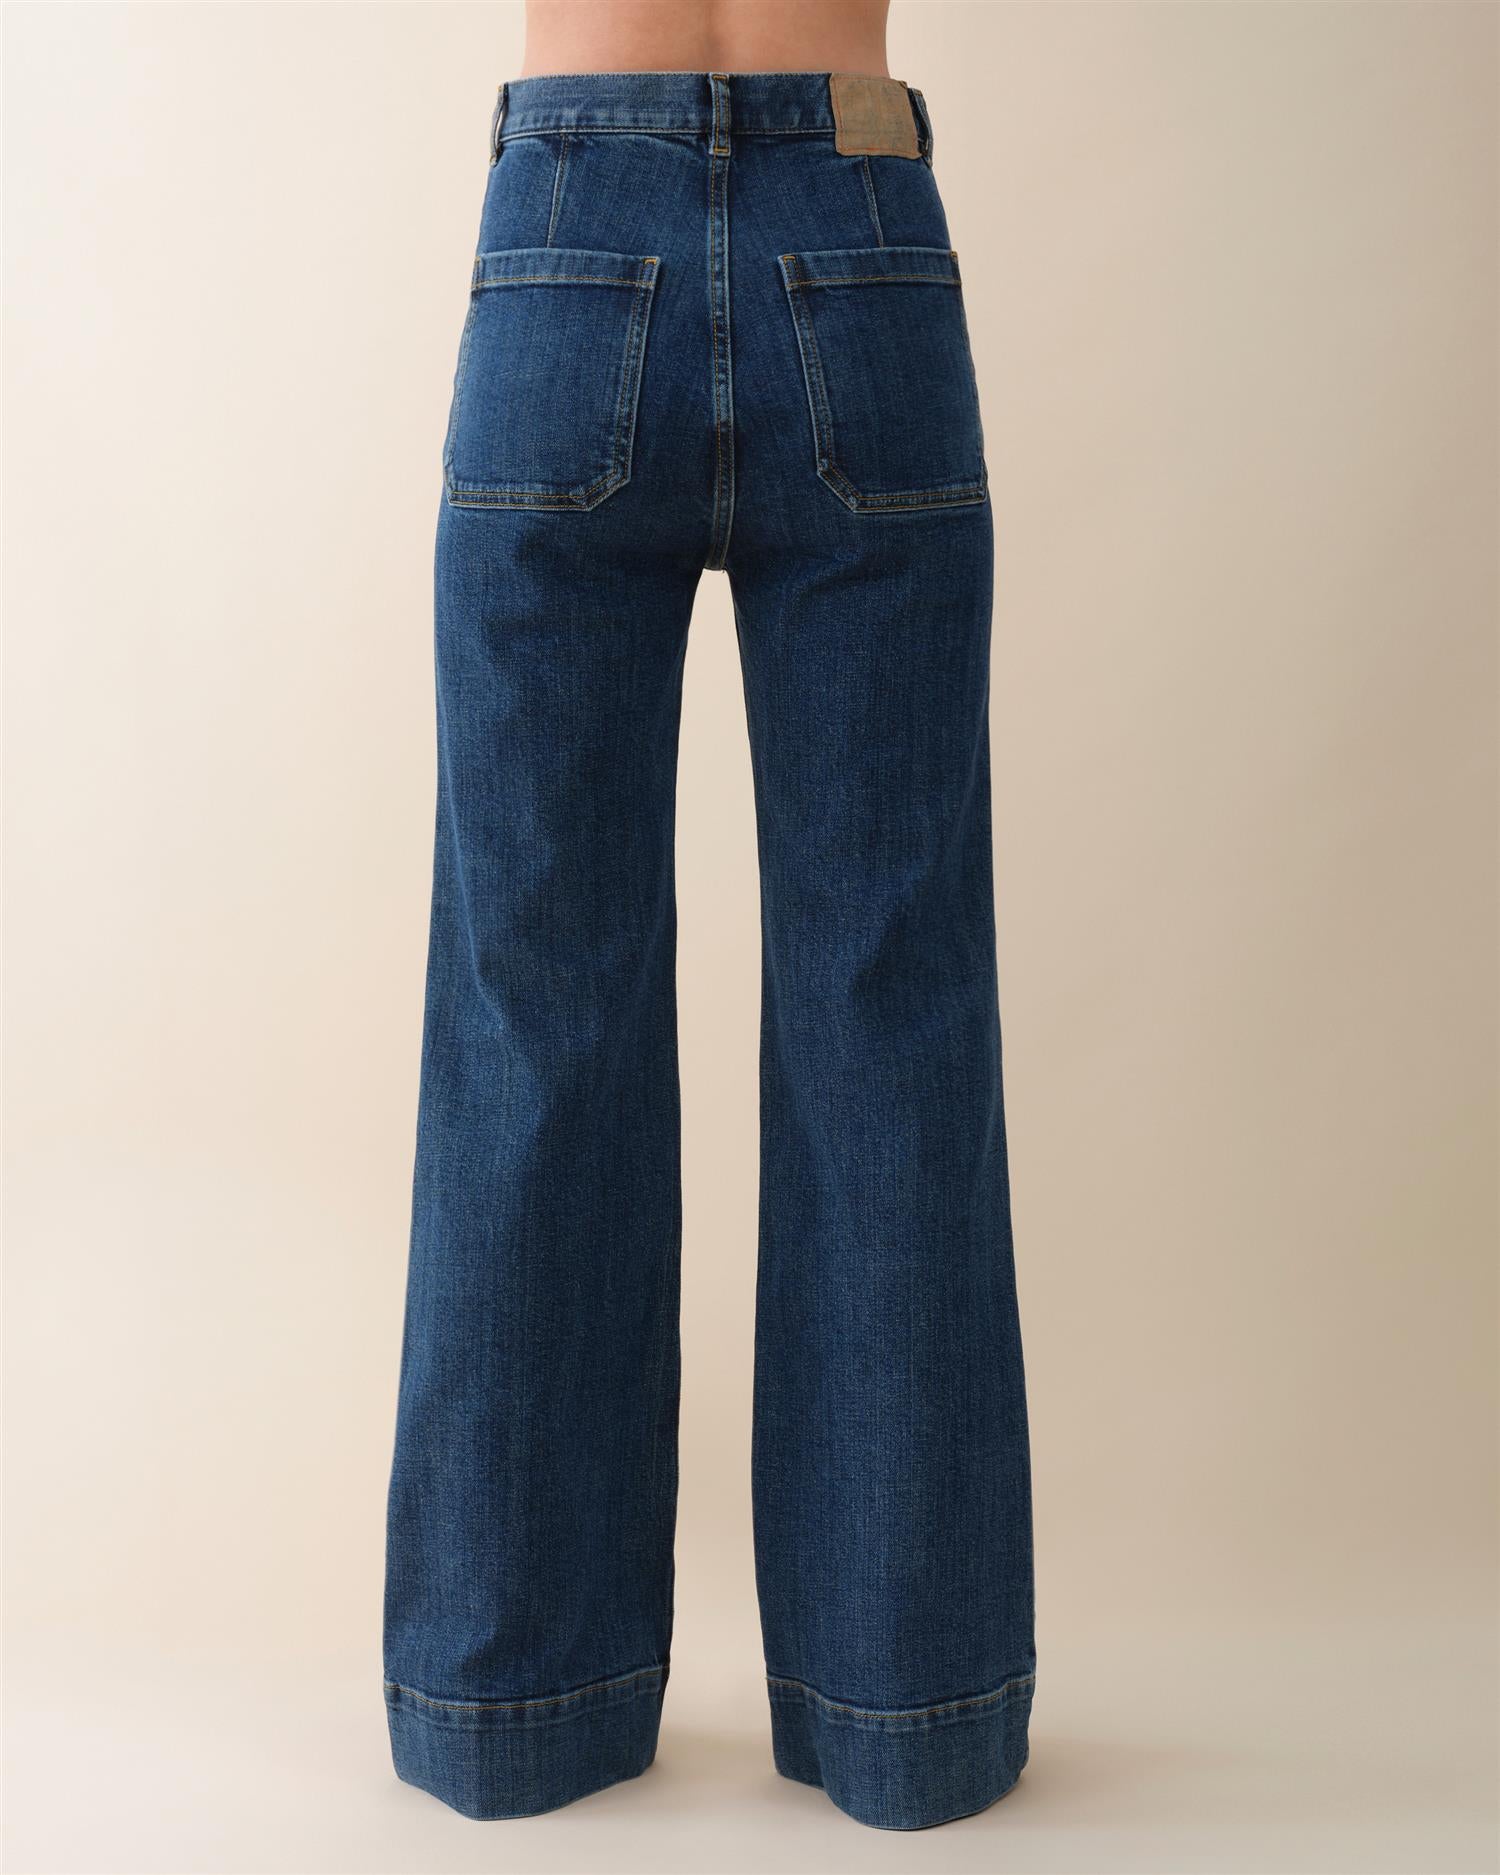 St Monica Jeans Vintage 95